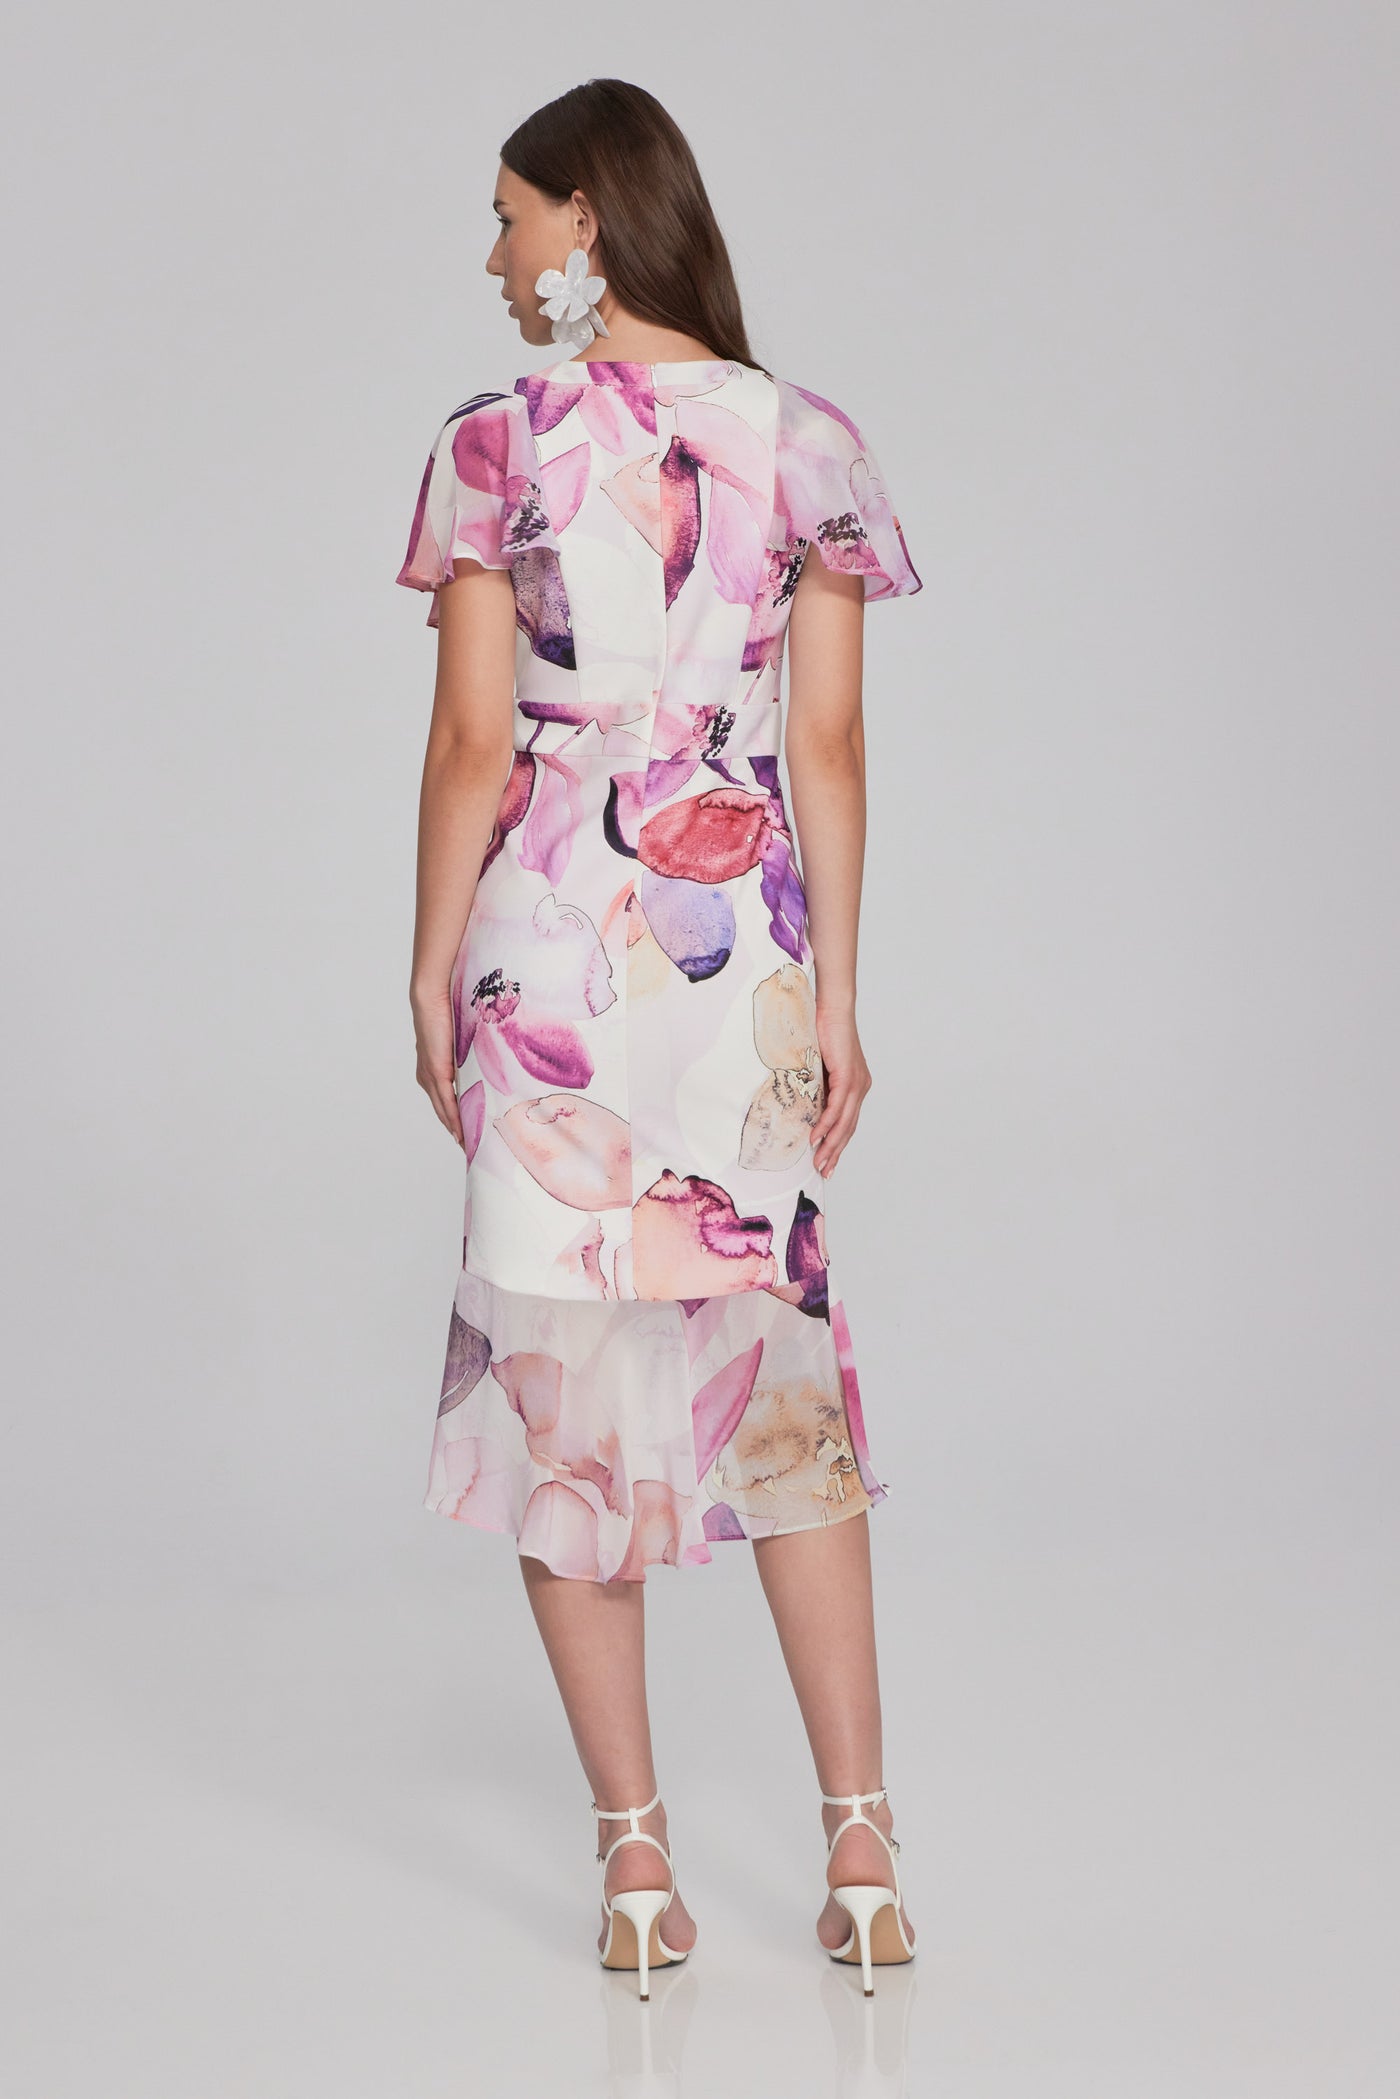 Joseph Ribkoff Floral Print Chiffon Dress